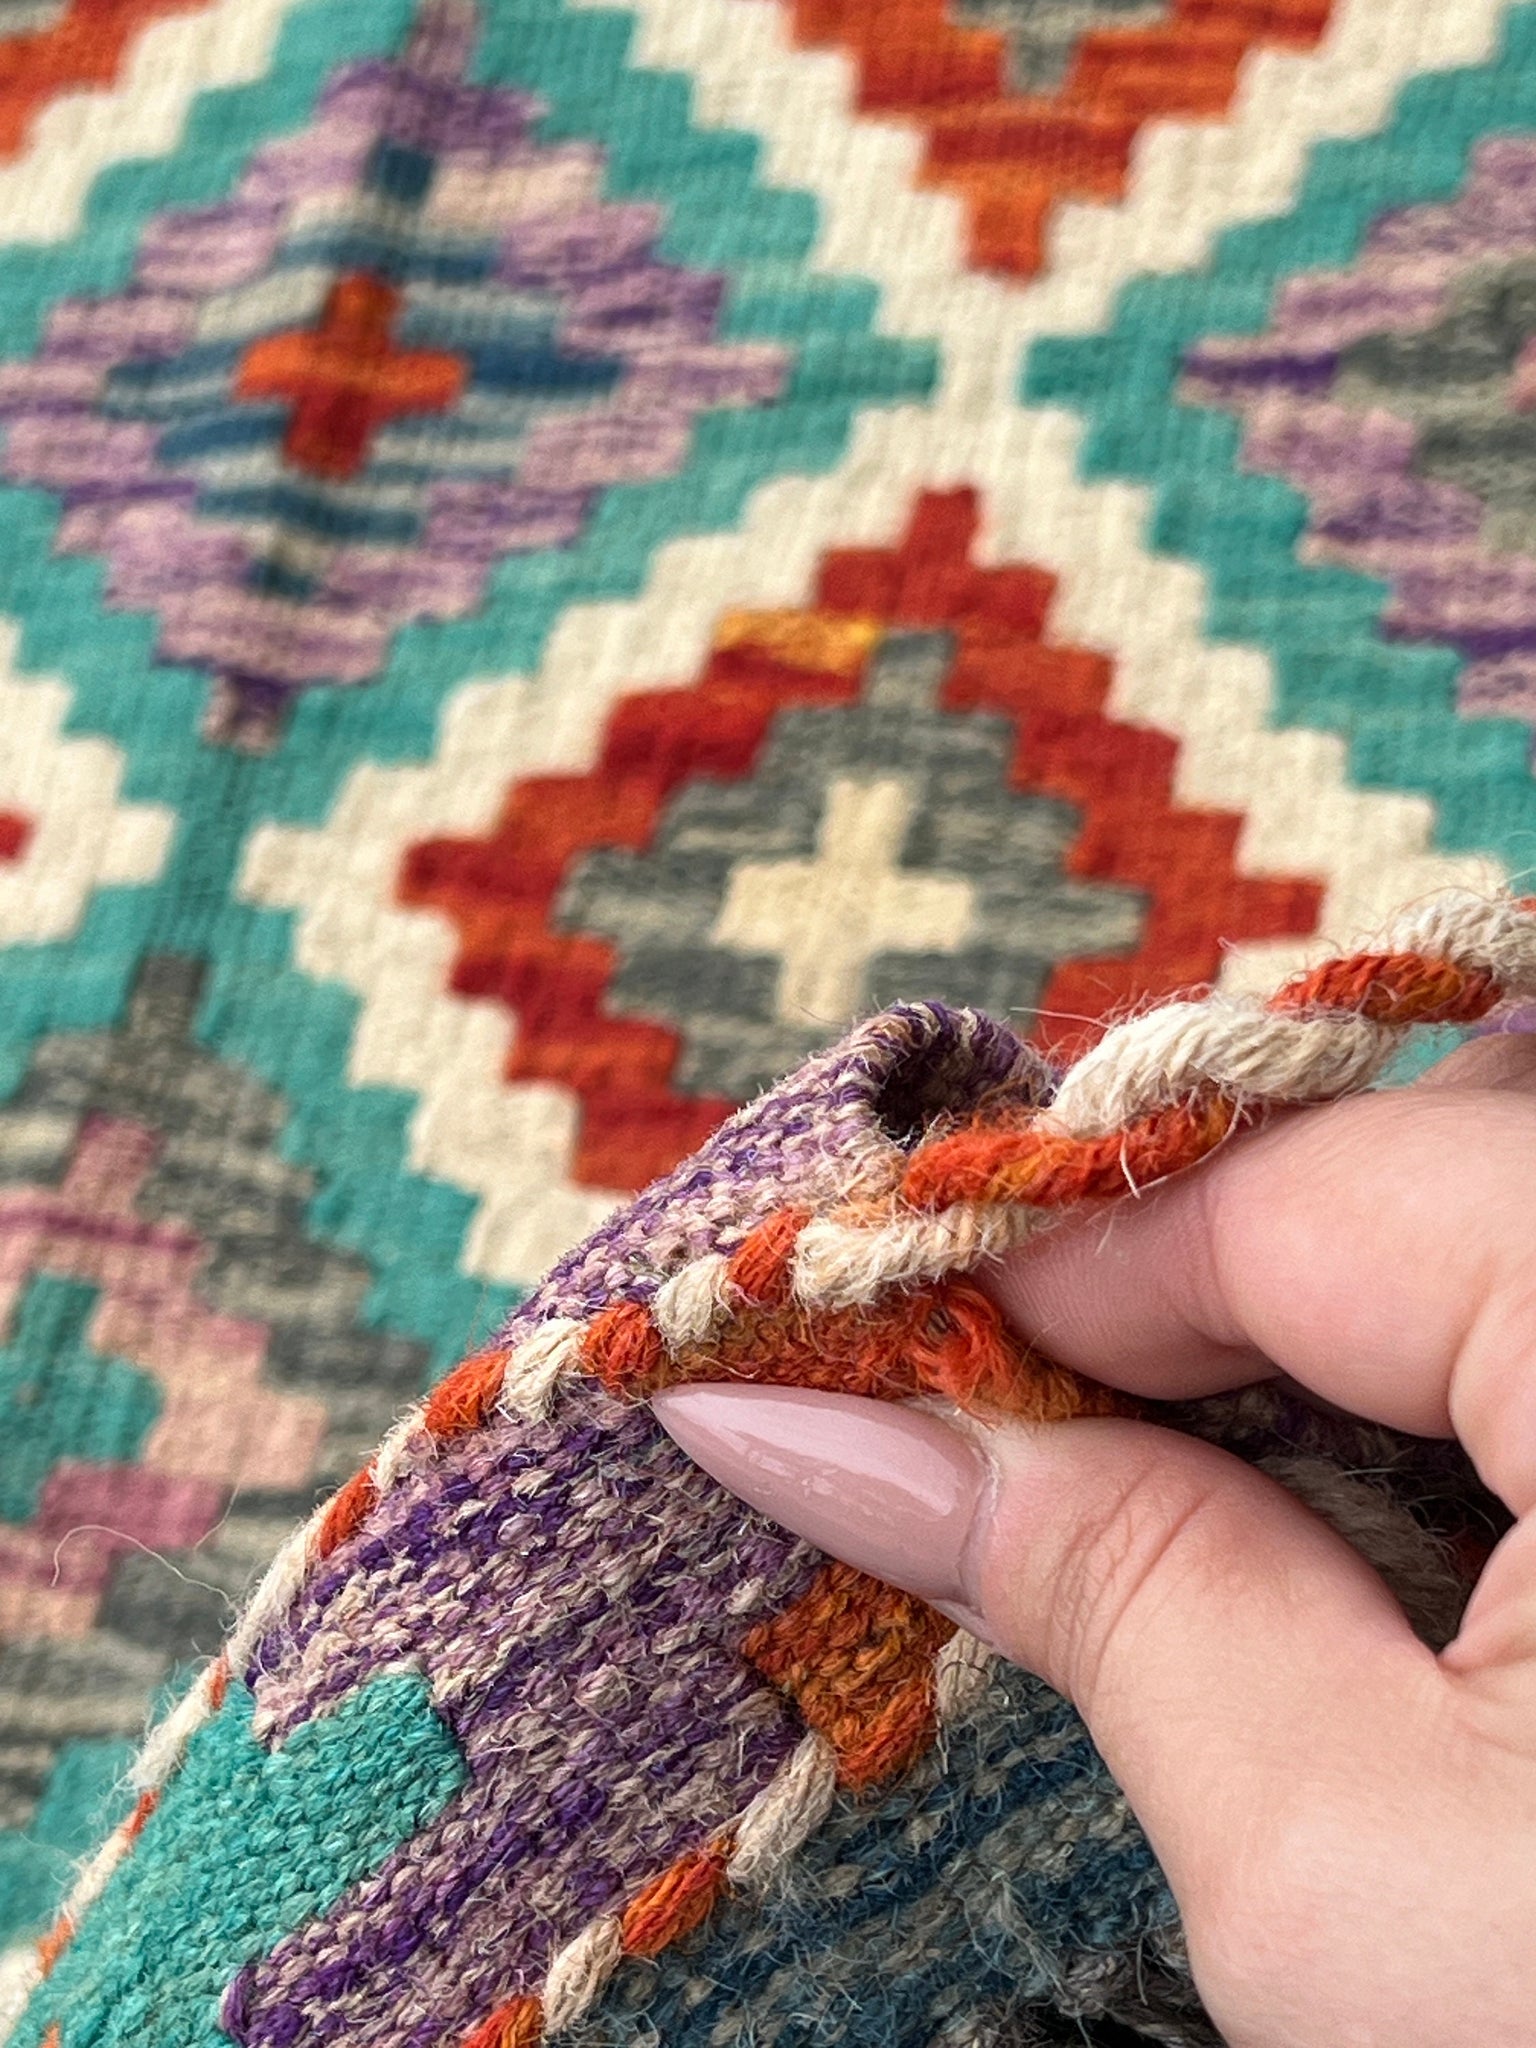 3x8 (90x245) Handmade Afghan Kilim Runner Rug | Cream Beige Burnt Orange Grey Teal Denim Blue Lilac Purple Blood Red | Flatweave Wool